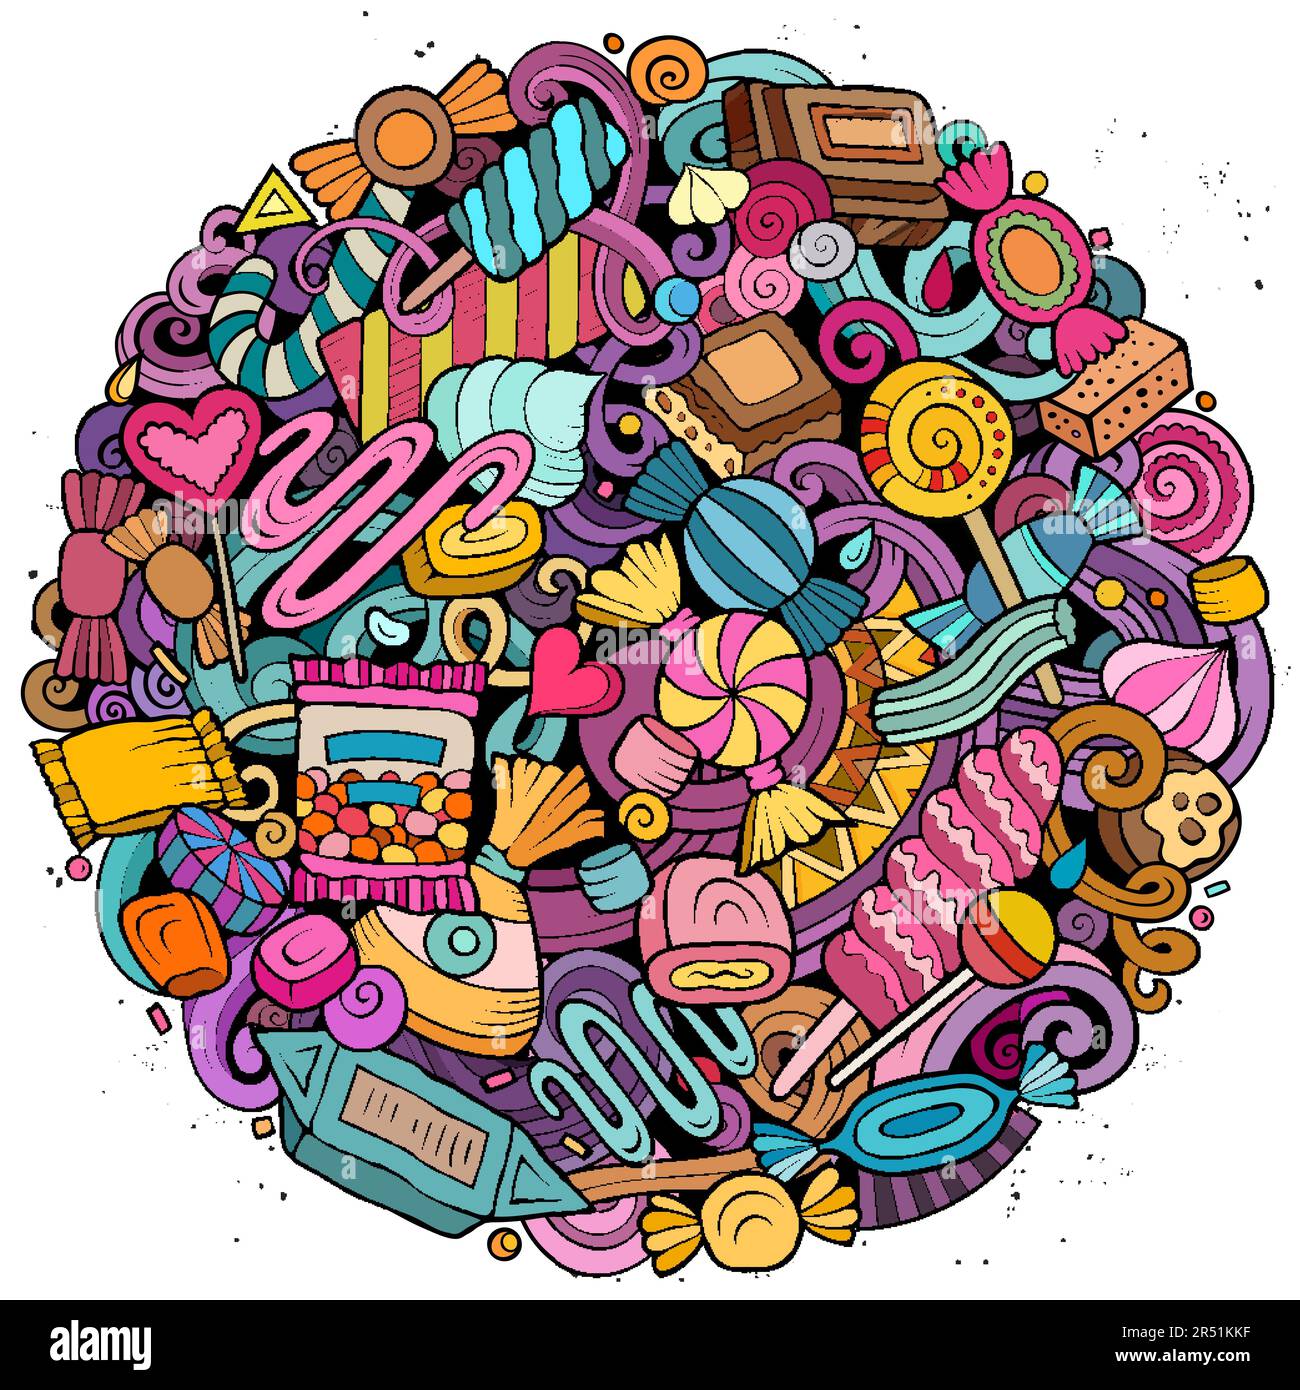 Bonbons Cartoon-Vektor runde Kritzeleien Illustration. Süßes Essen. Konfektionierungselemente und Hintergrund von Objekten. Helle Farben, lustiges Bild. Alles klar Stock Vektor